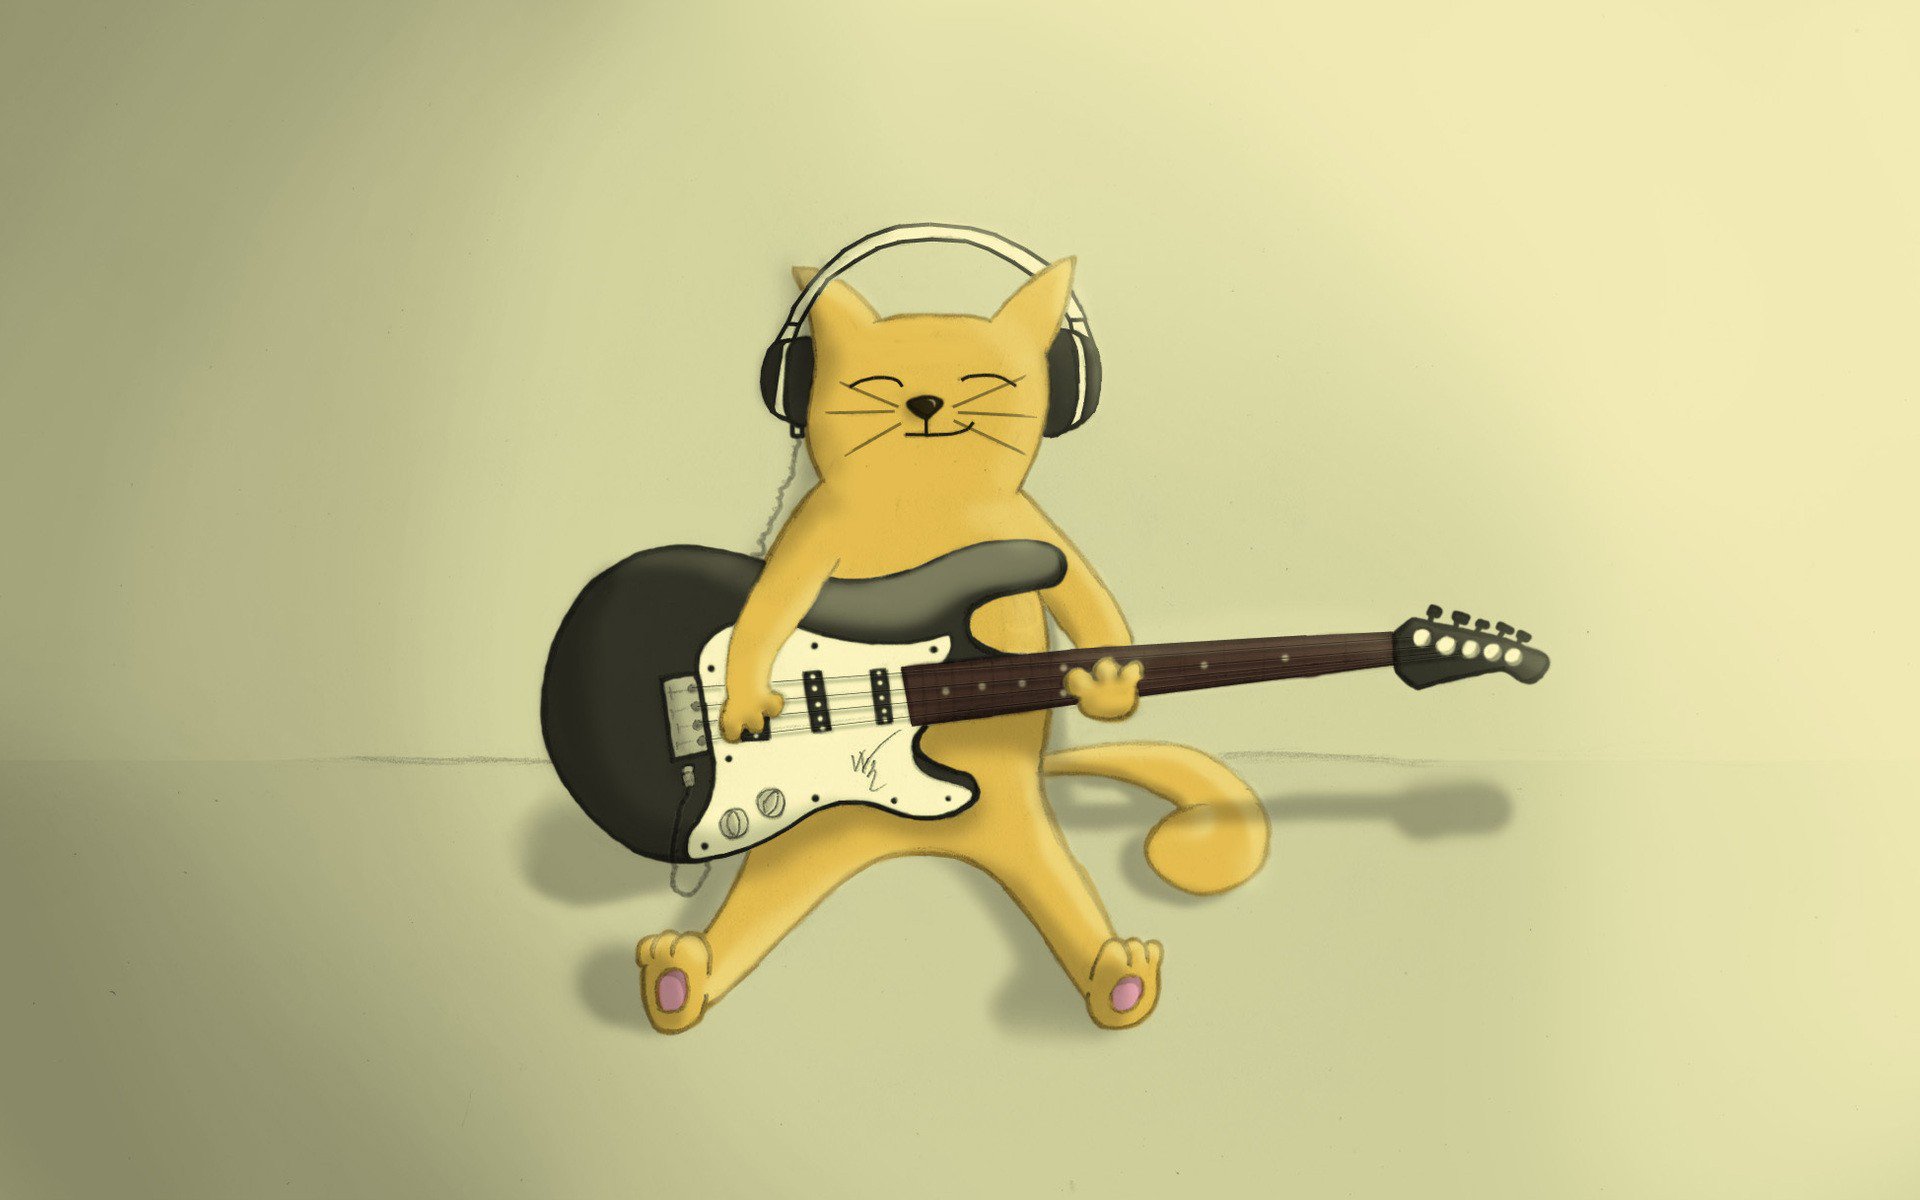 Котик с гитарой